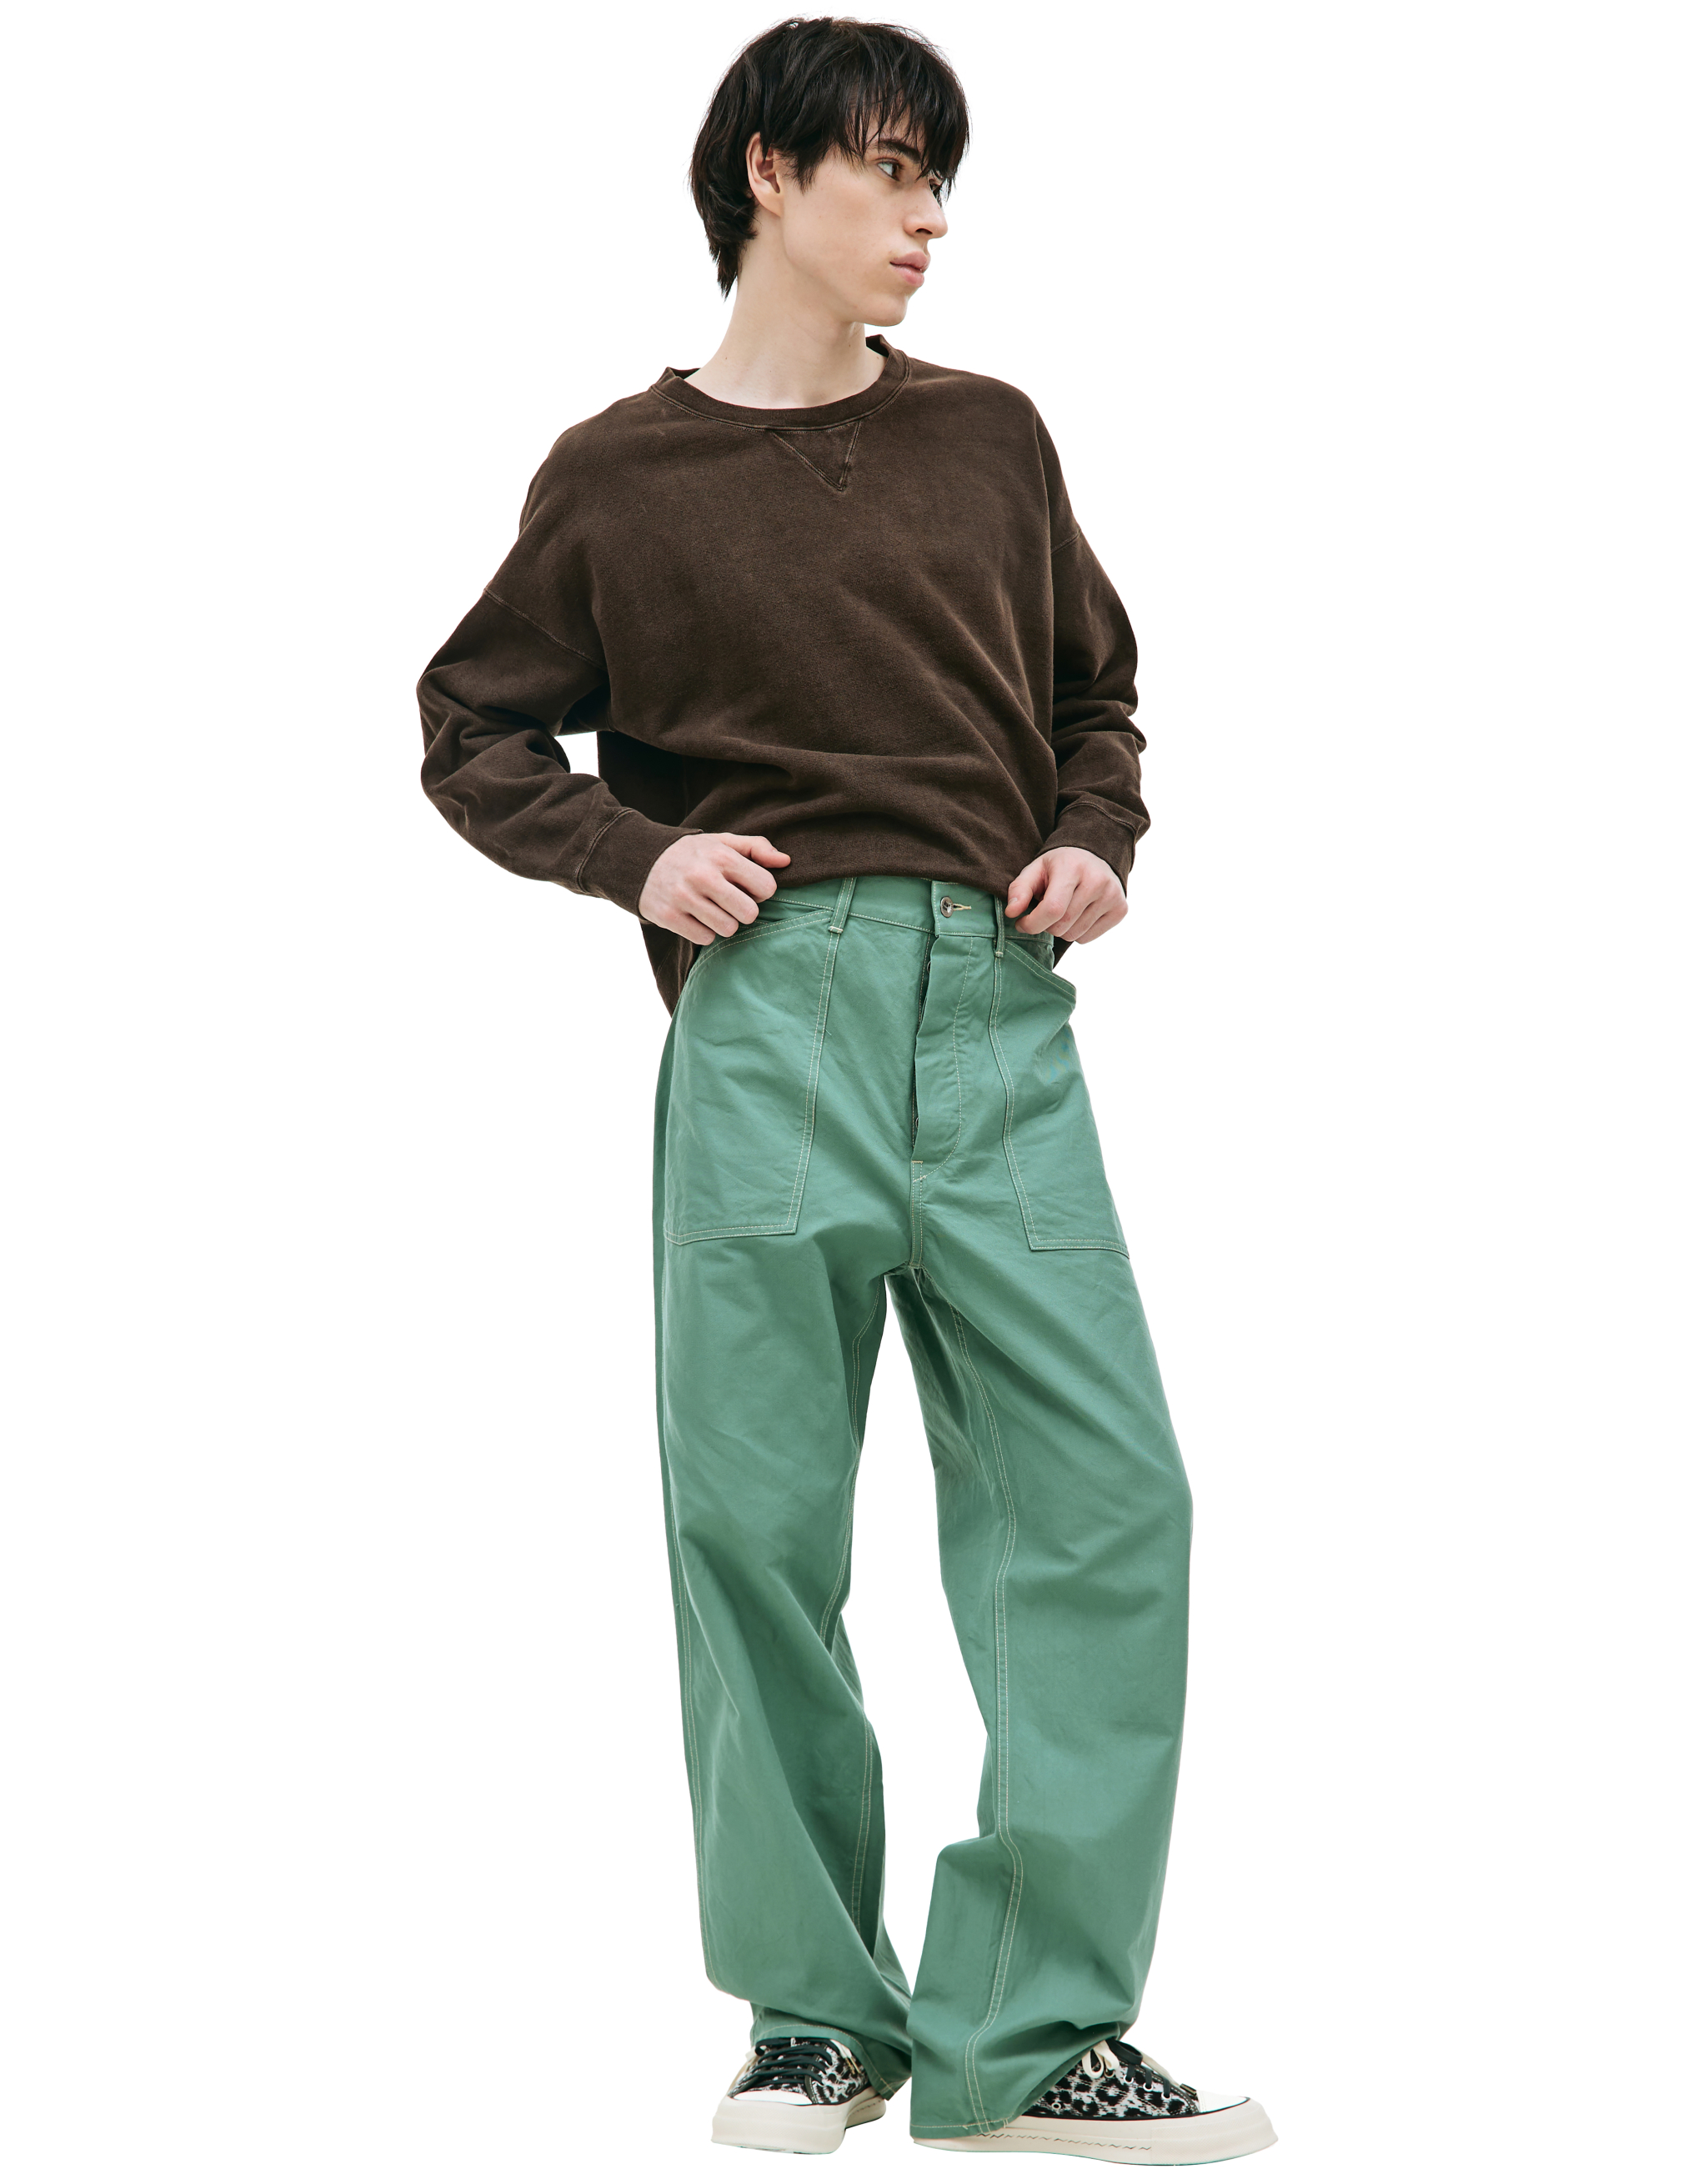 Зеленые брюки Carpenter с накладными карманами visvim 0123105008004/GREEN, размер 4